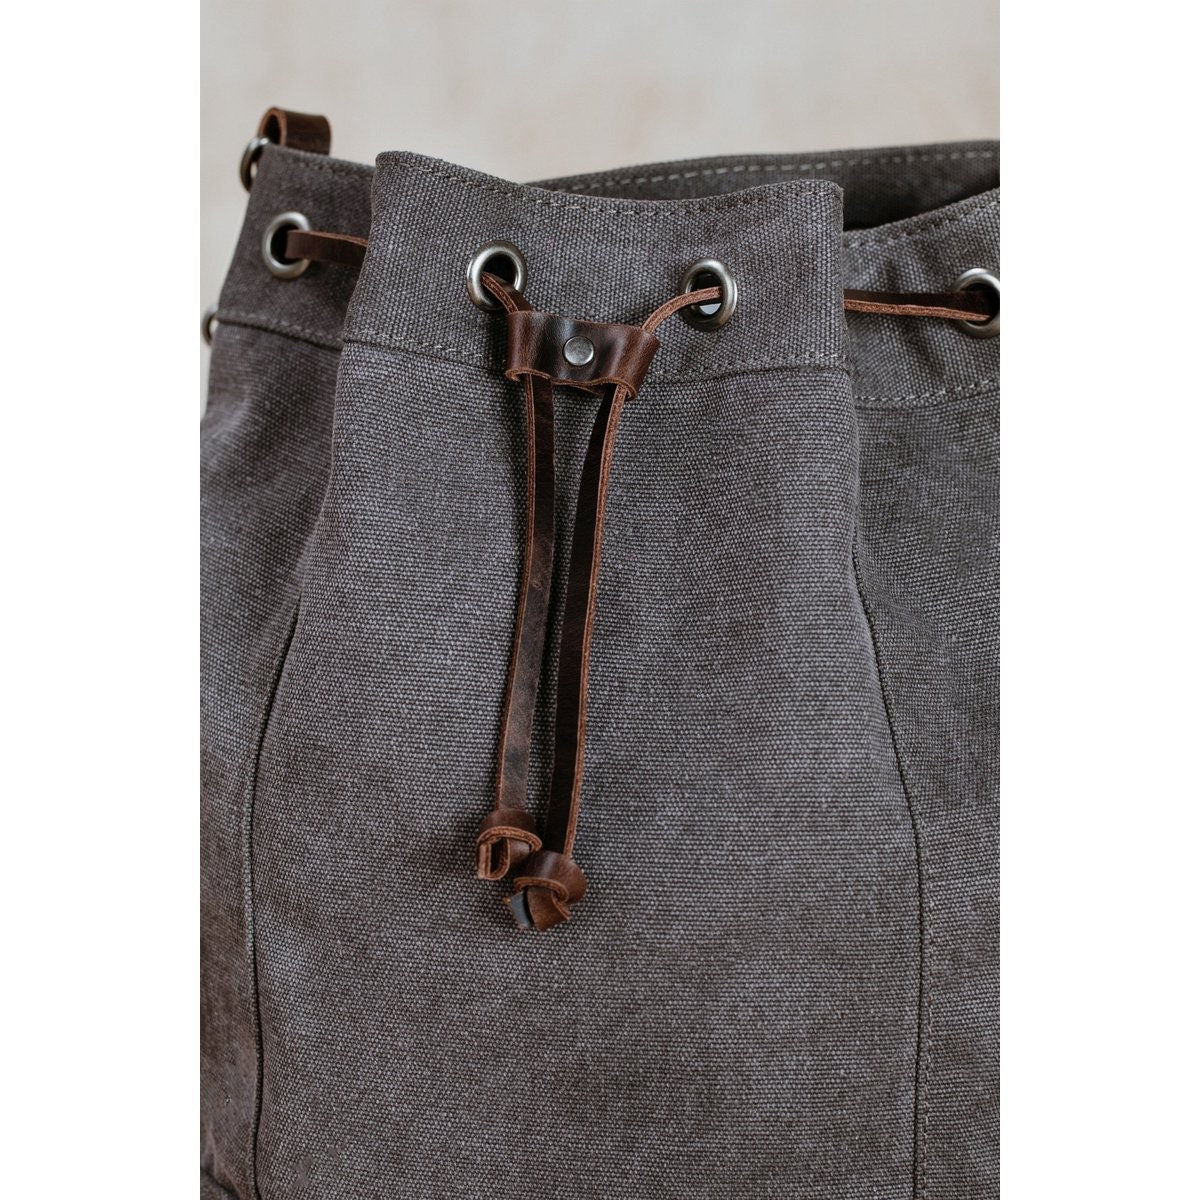 NORDLICHT Beuteltasche JANNA Tasche aus Segeltuch 2 in 1 Rucksack und Umhängetasche grau